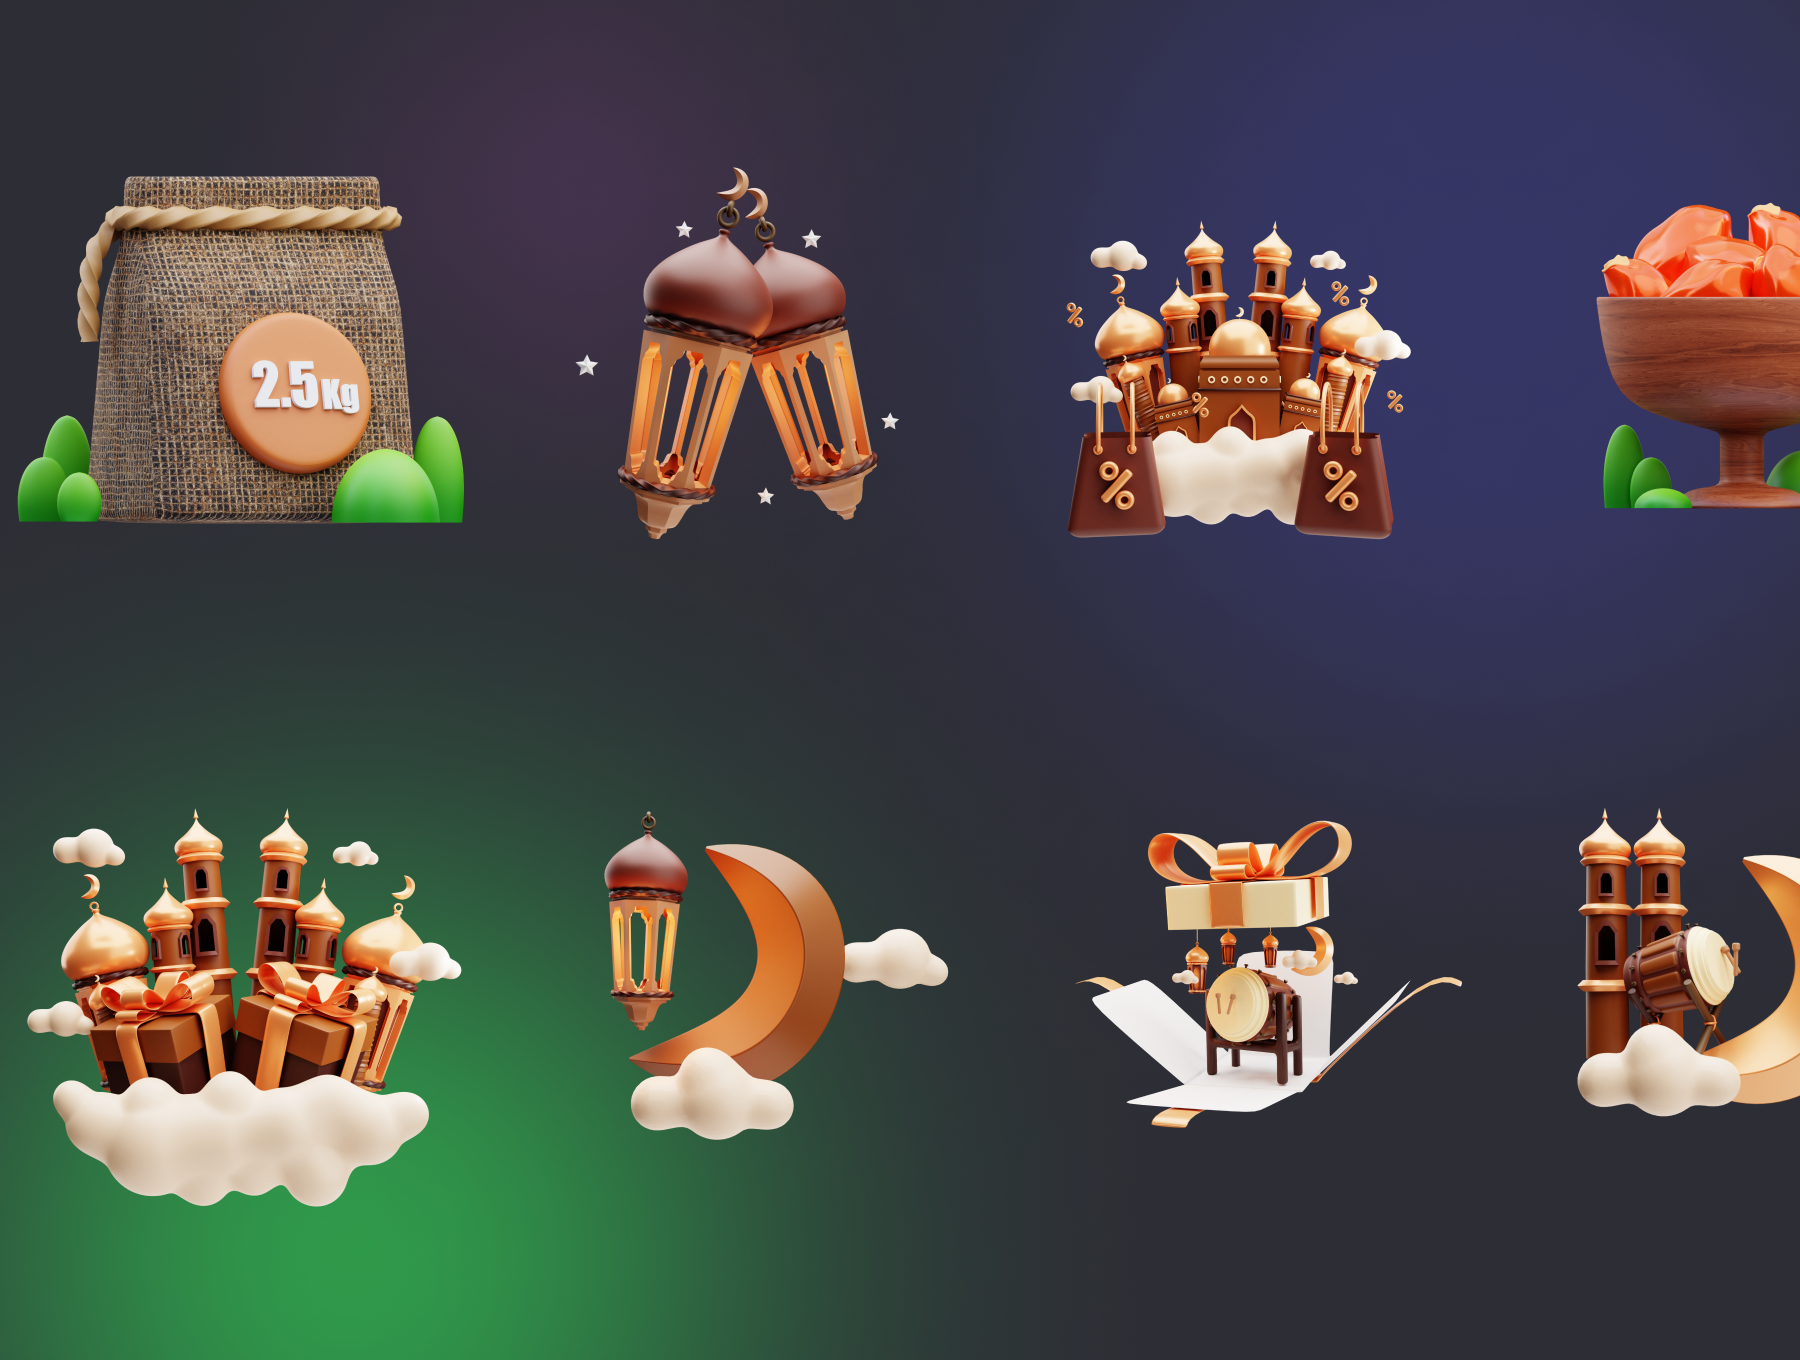 斋月3D图标 Ramadan 3D Icons png, blender, obj, glb格式-3D/图标-到位啦UI